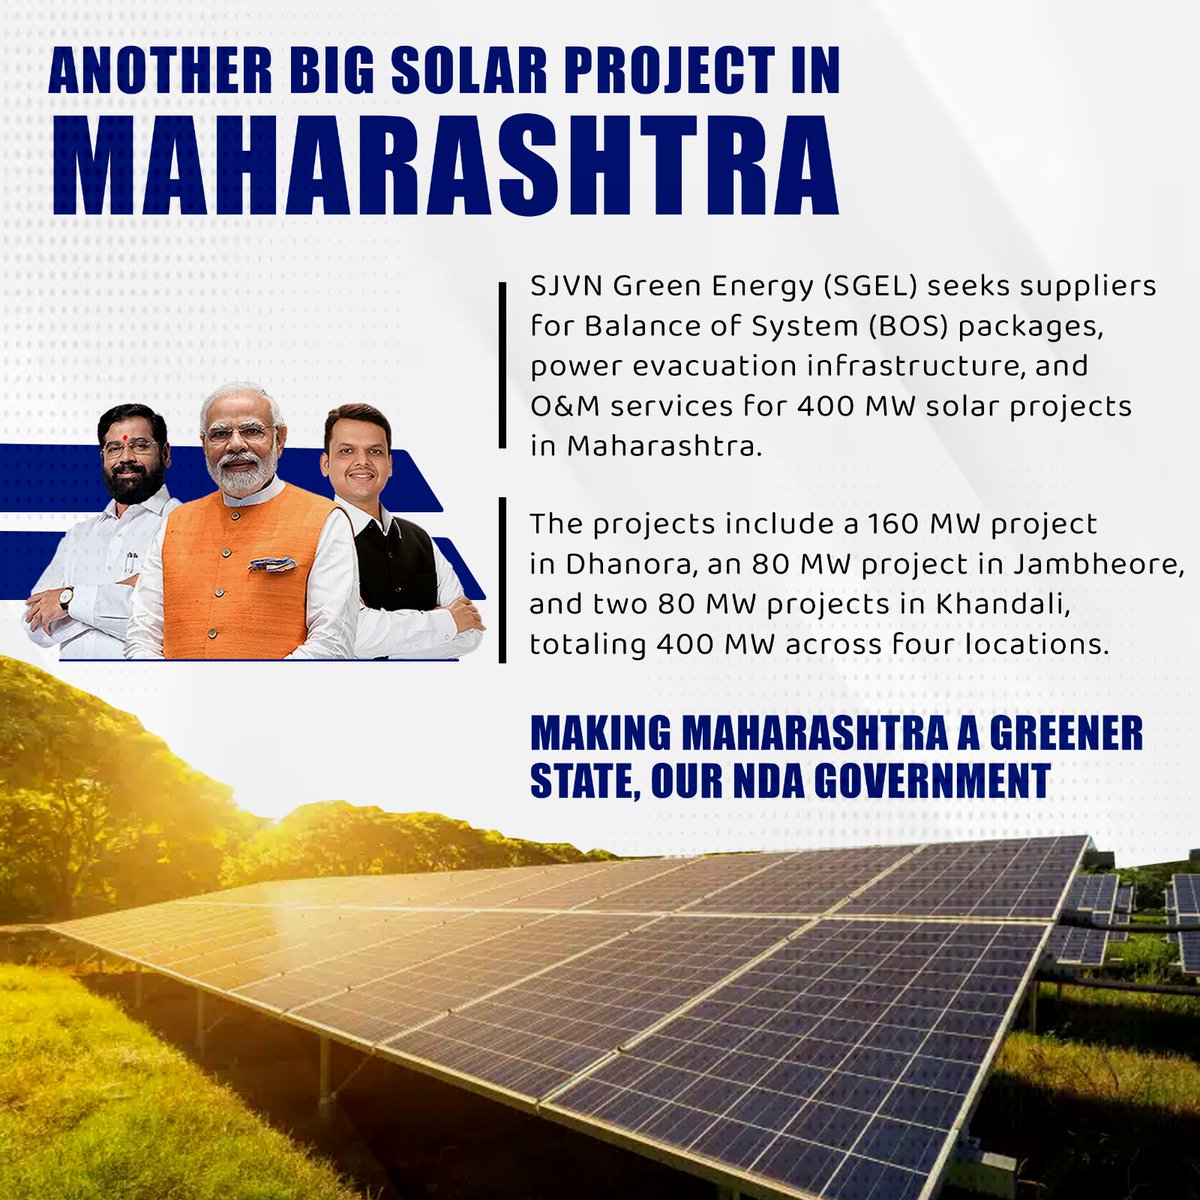 महाराष्ट्र की अक्षय ऊर्जा यात्रा में एक और मील का पत्थर! SJVN ग्रीन एनर्जी की 400 मेगावाट की सौर परियोजना स्वच्छ बिजली उत्पादन के लिए राज्य की क्षमता को रेखांकित करती है। ऐसी पहलों के लिए अनुकूल वातावरण को बढ़ावा देने के लिए सीएम एकनाथ शिंदे की सरकार को बधाई।